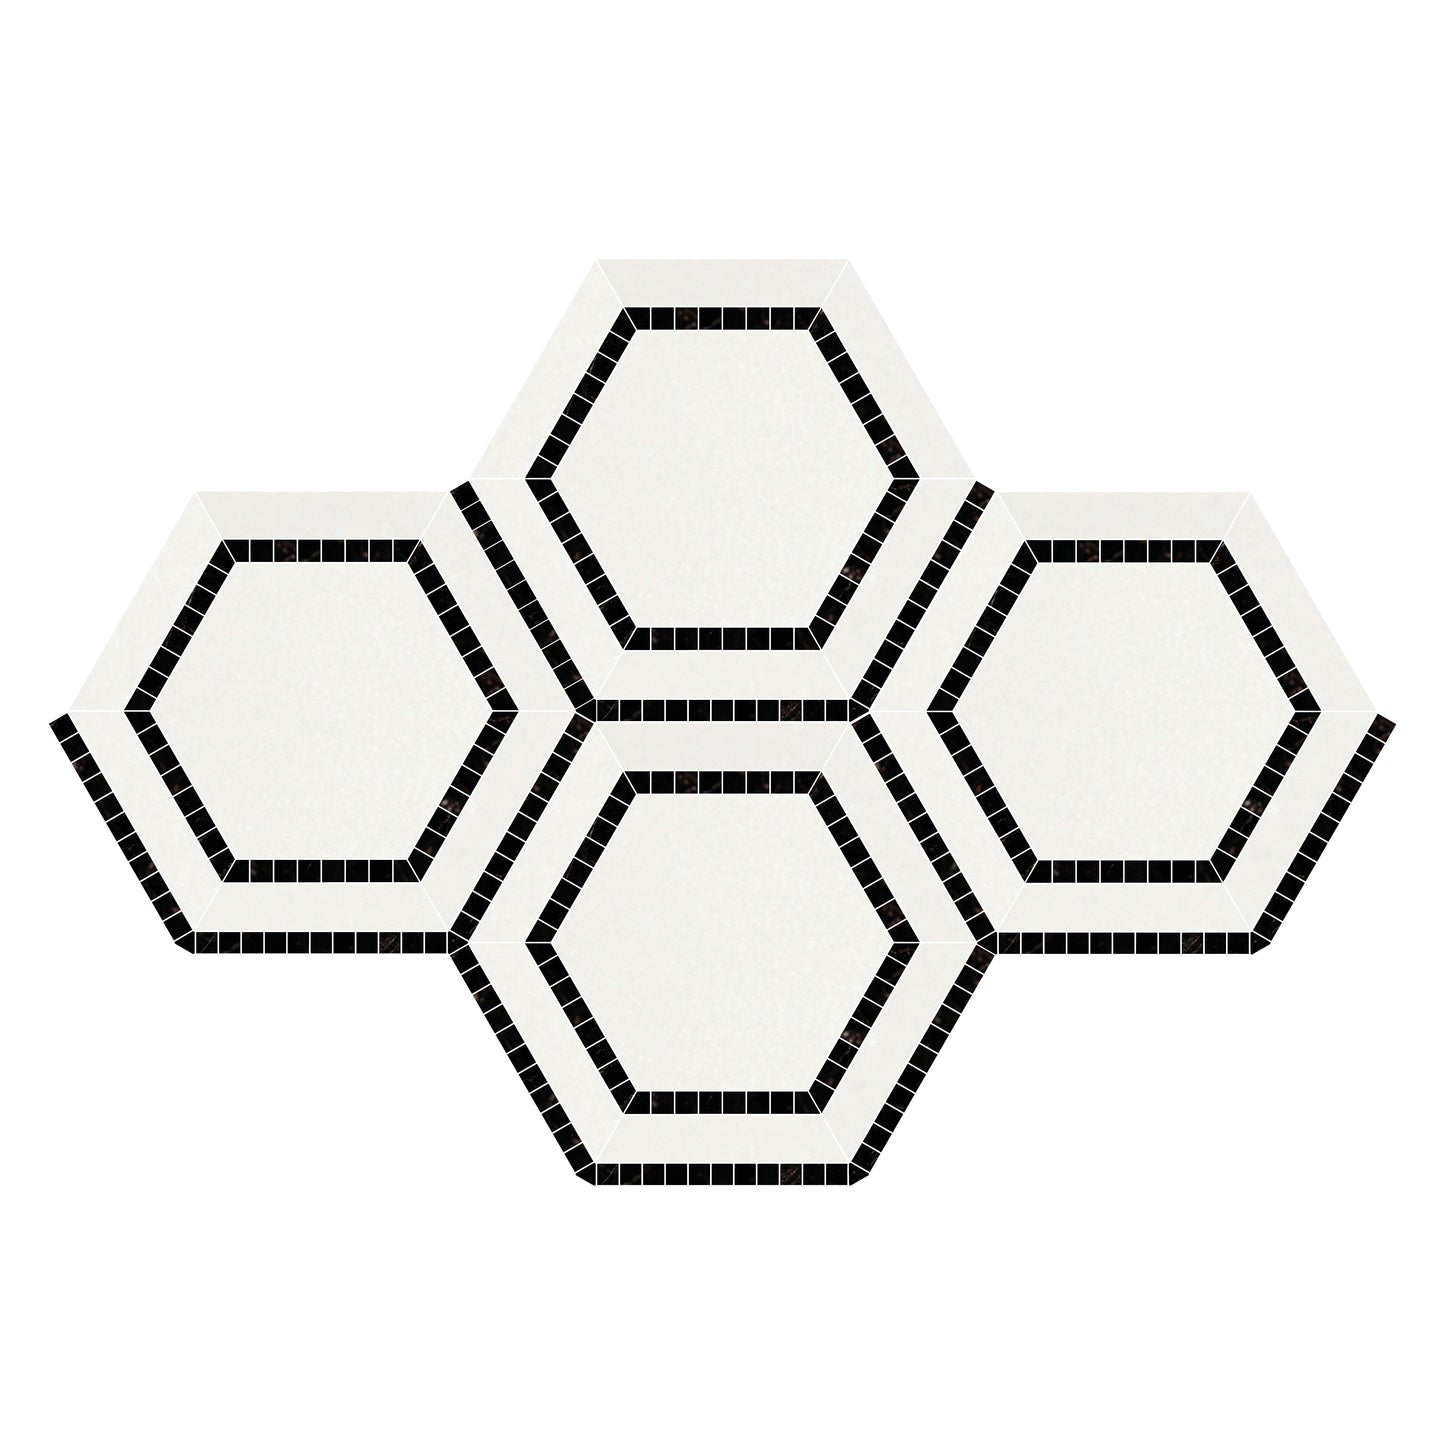 Thassos White Hexagon Combination w/ Black Mosaic Tile 5x5"